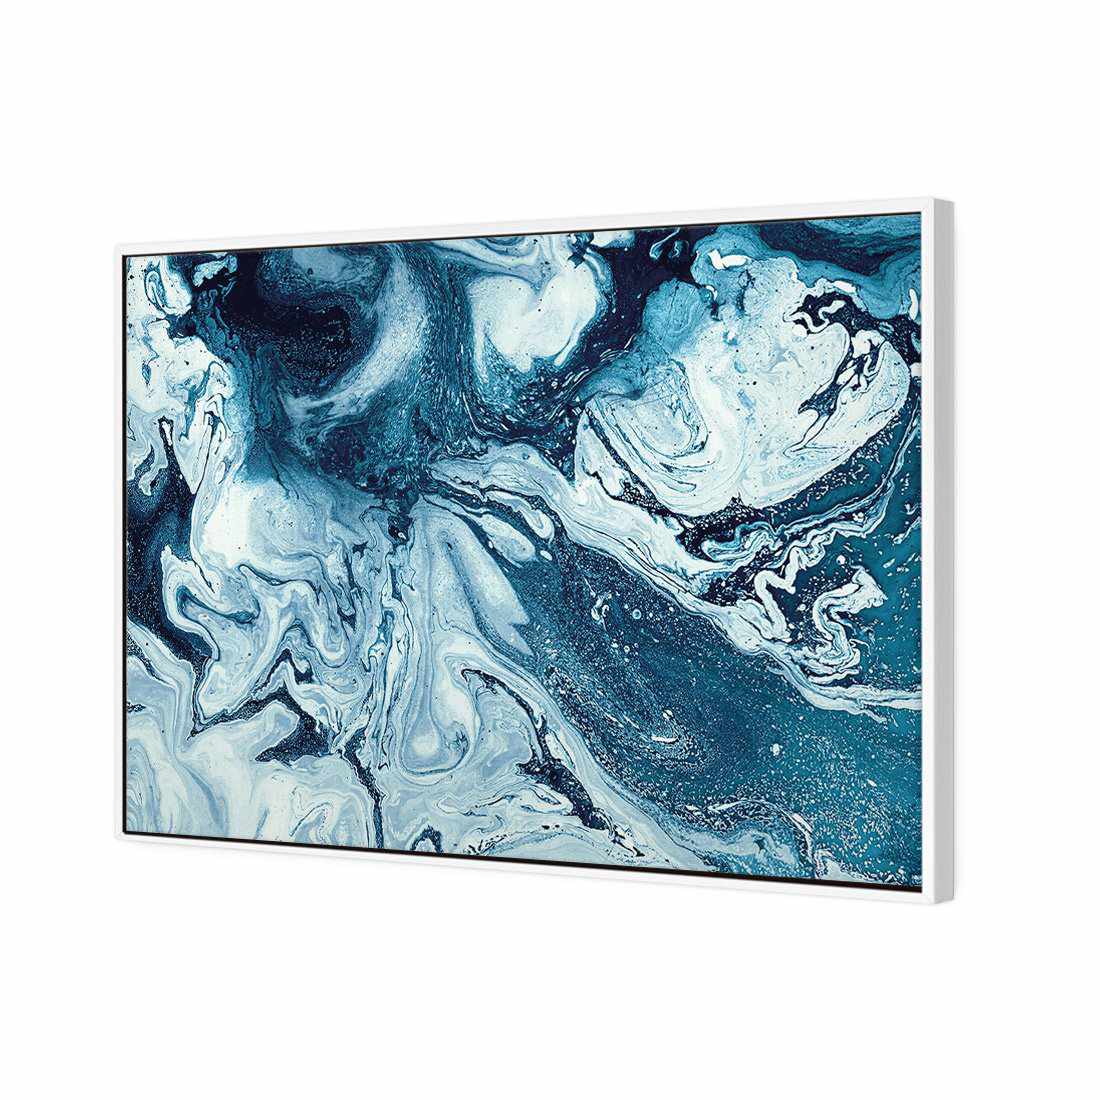 Liquified, Deep Blue Canvas Art-Canvas-Wall Art Designs-45x30cm-Canvas - White Frame-Wall Art Designs